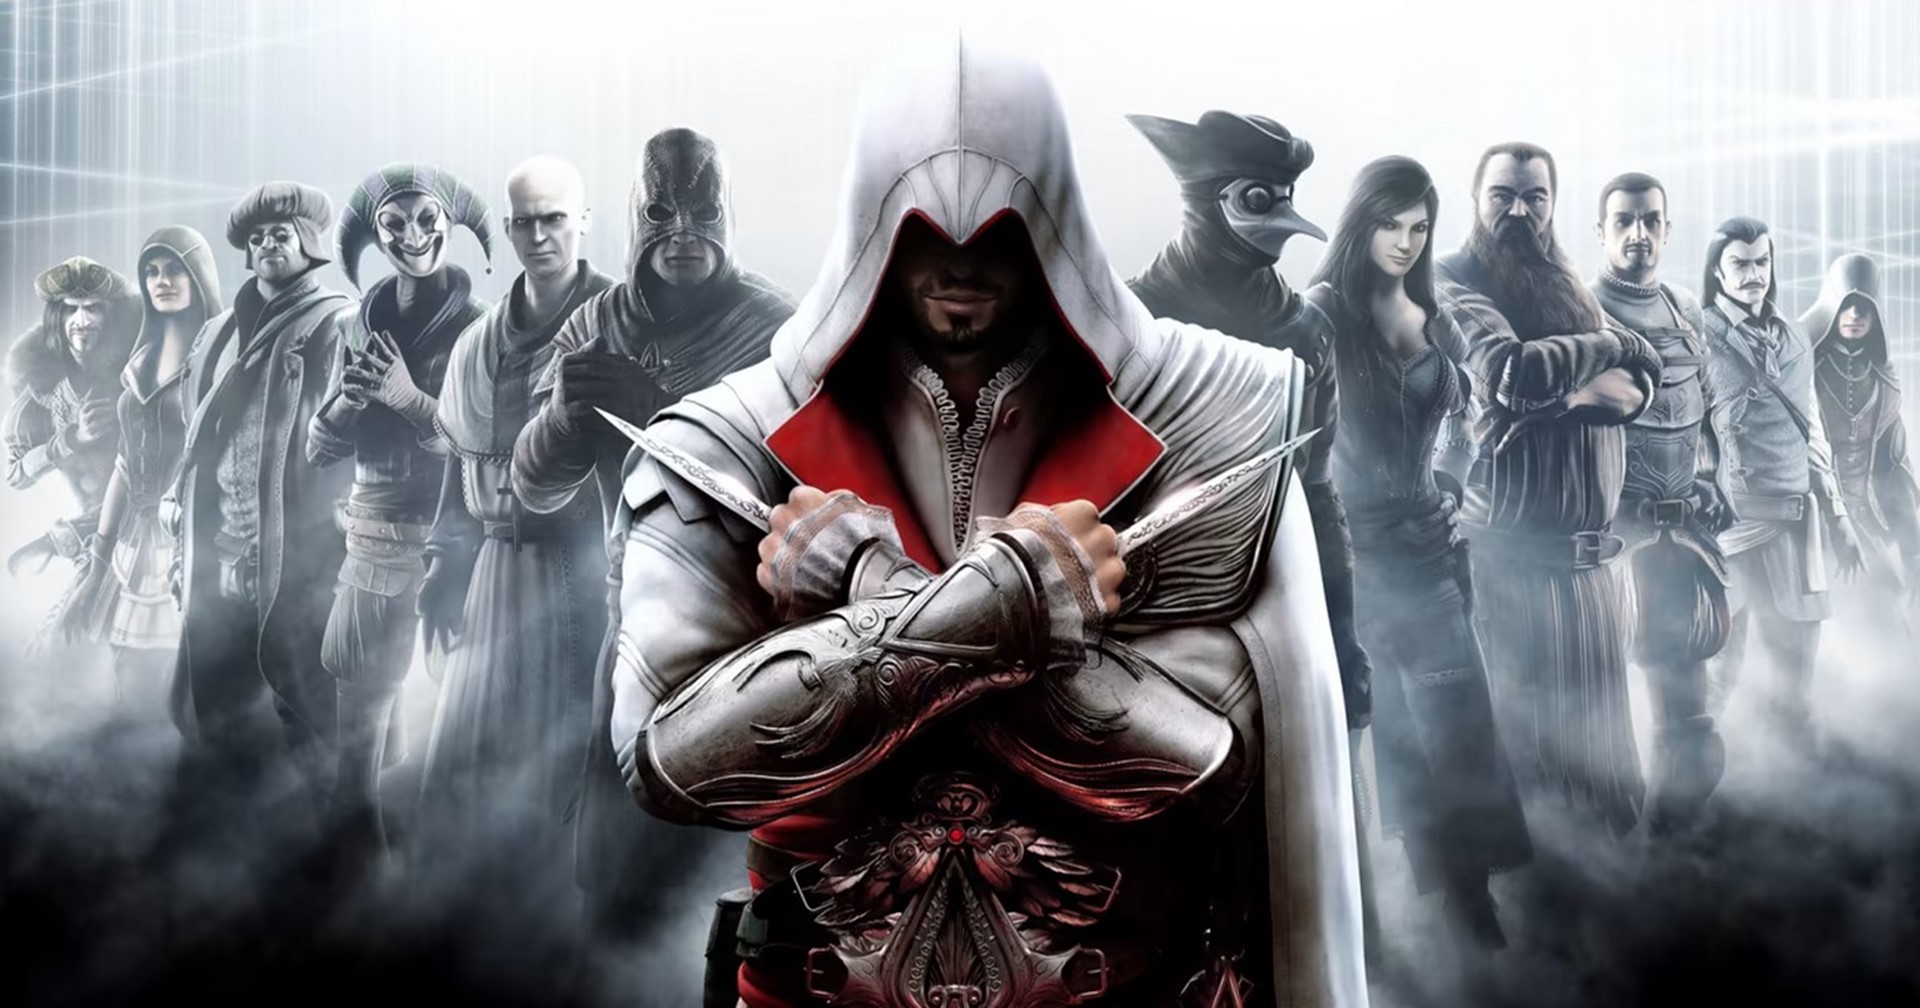 [ข่าวลือ] Ubisoft กำลังพัฒนาเกม Assassin’s Creed มากถึง 11 เกม